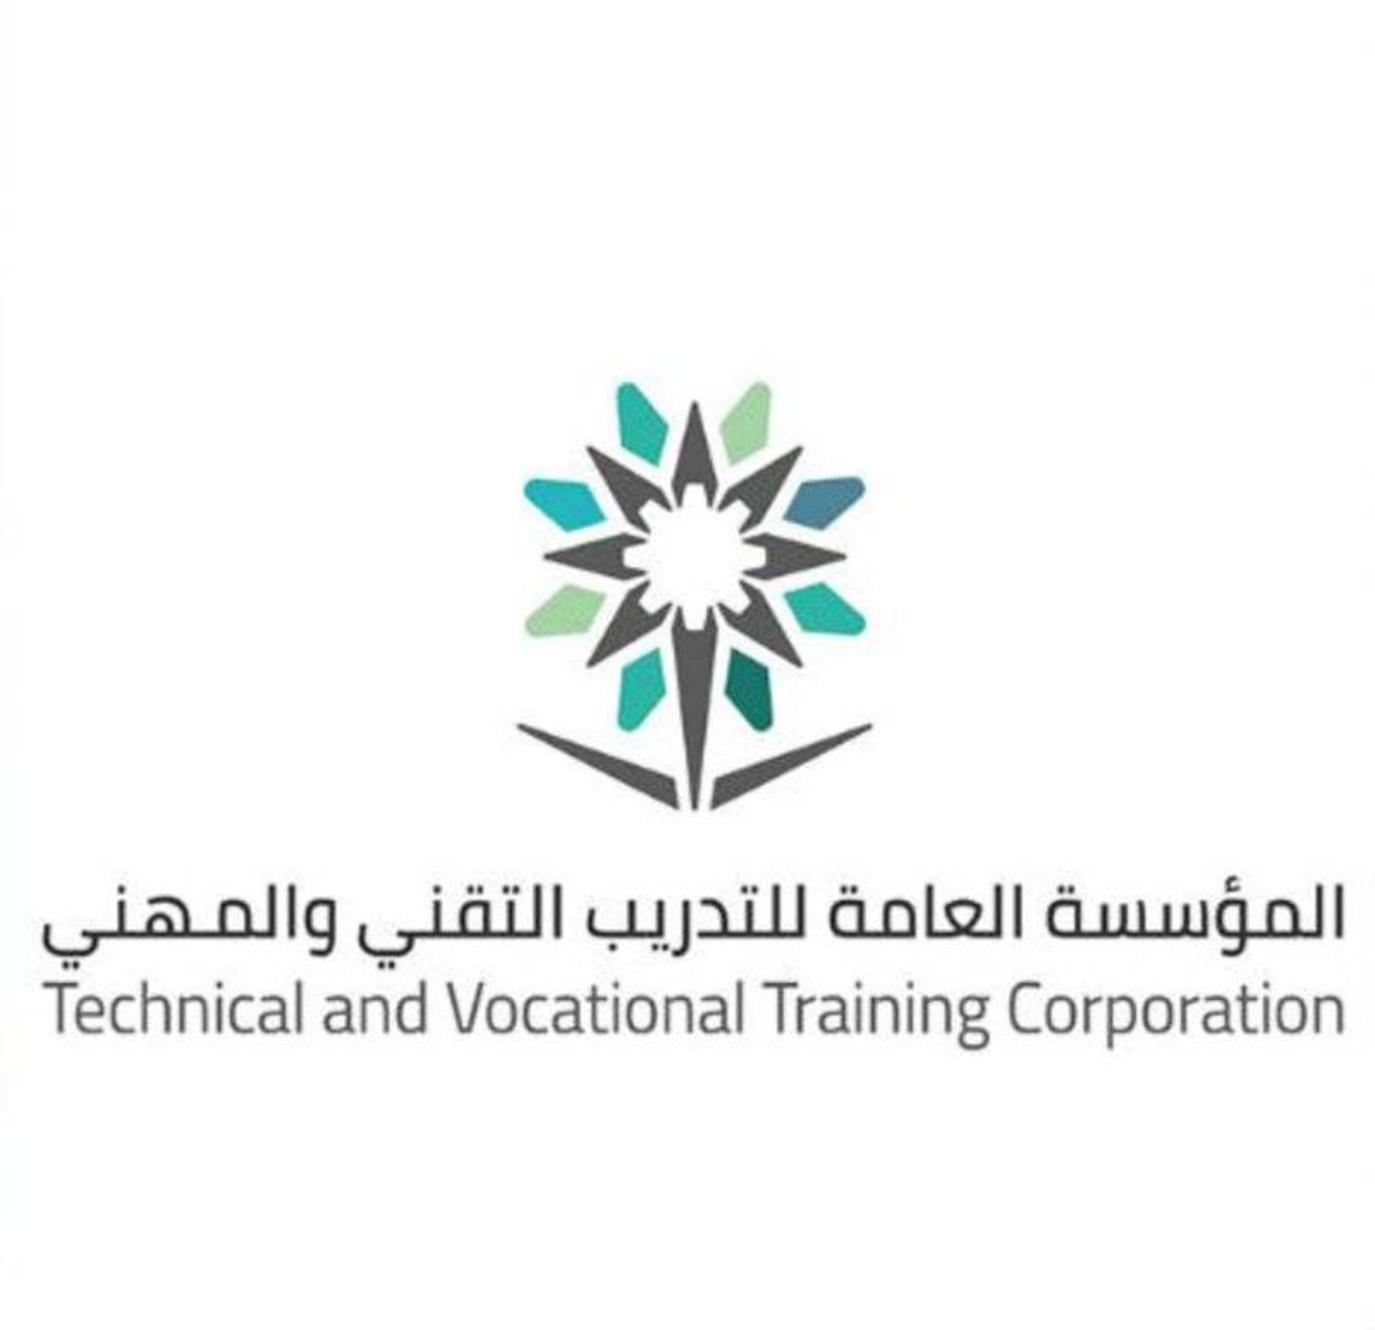 بدءًا من اليوم.. الكلية التقنية السعودية تبدأ في استقبال طلبات تسجيل الطلاب بالفصل الثاني عبر الرابط التالي